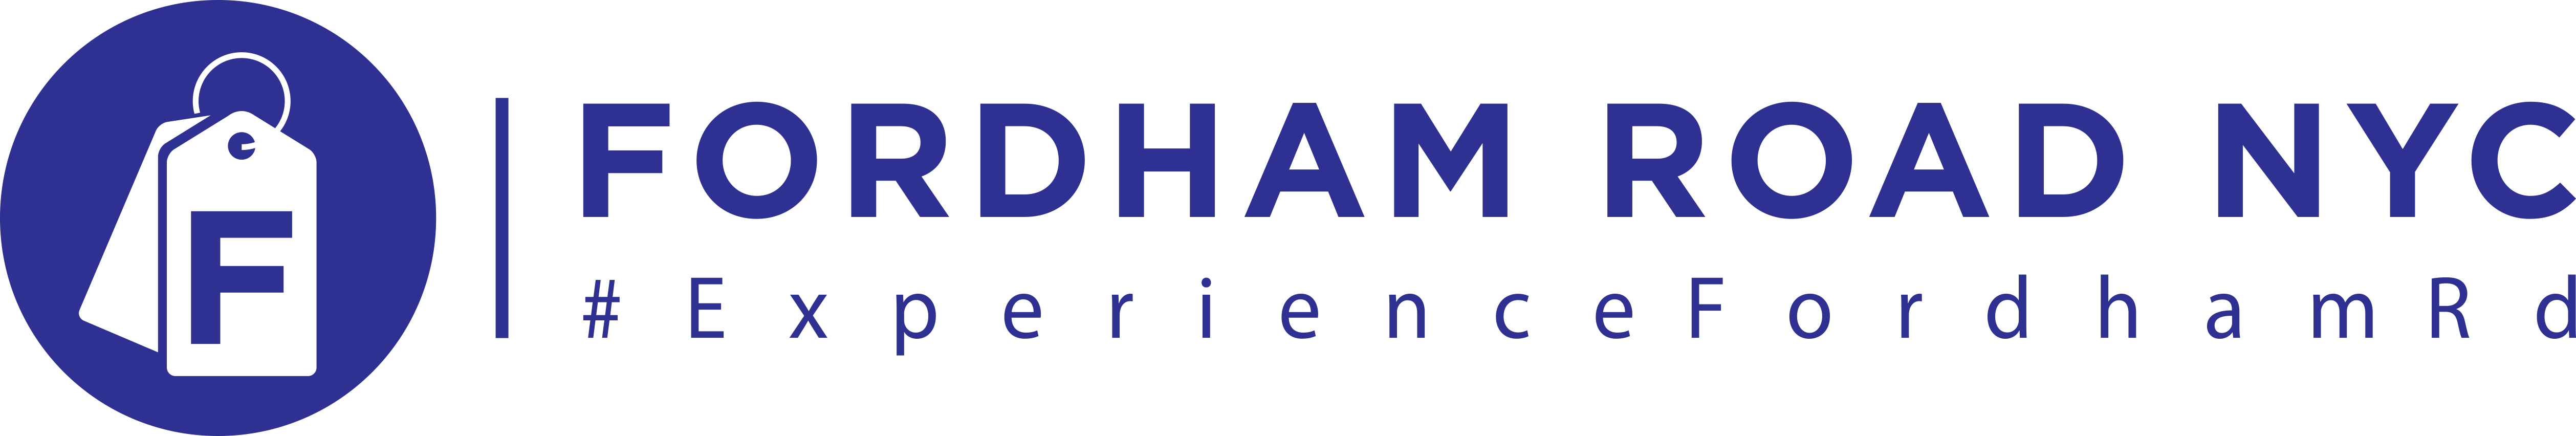 Fordham Road NYC logo